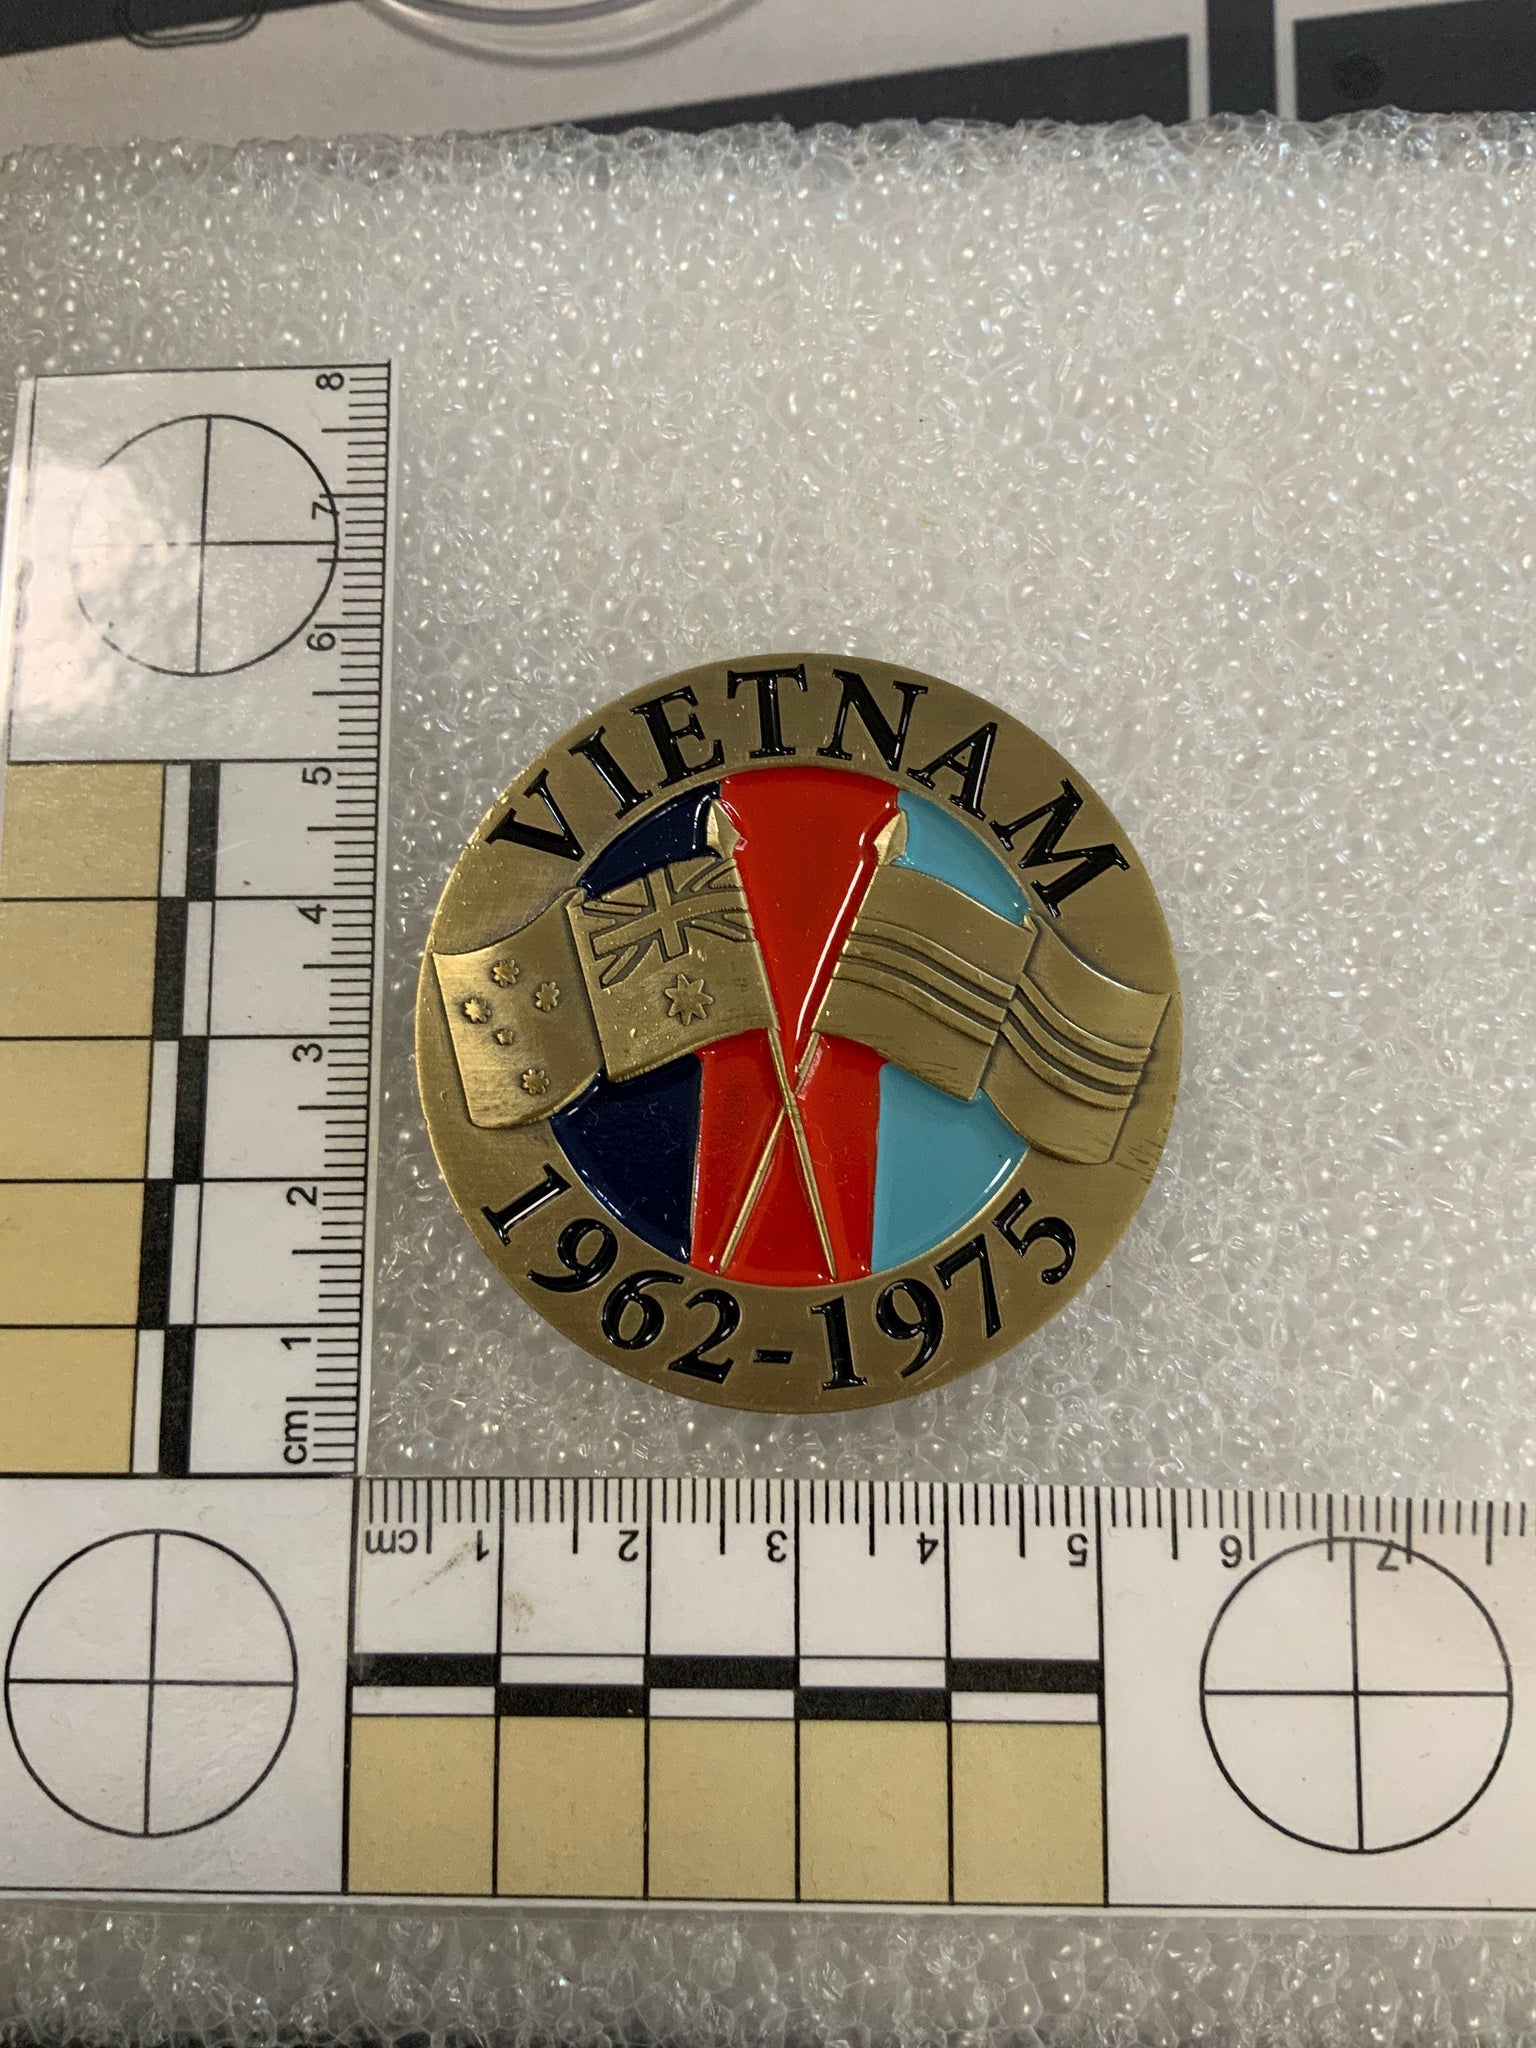 Vietnam 1962-1975 Challenge Coin